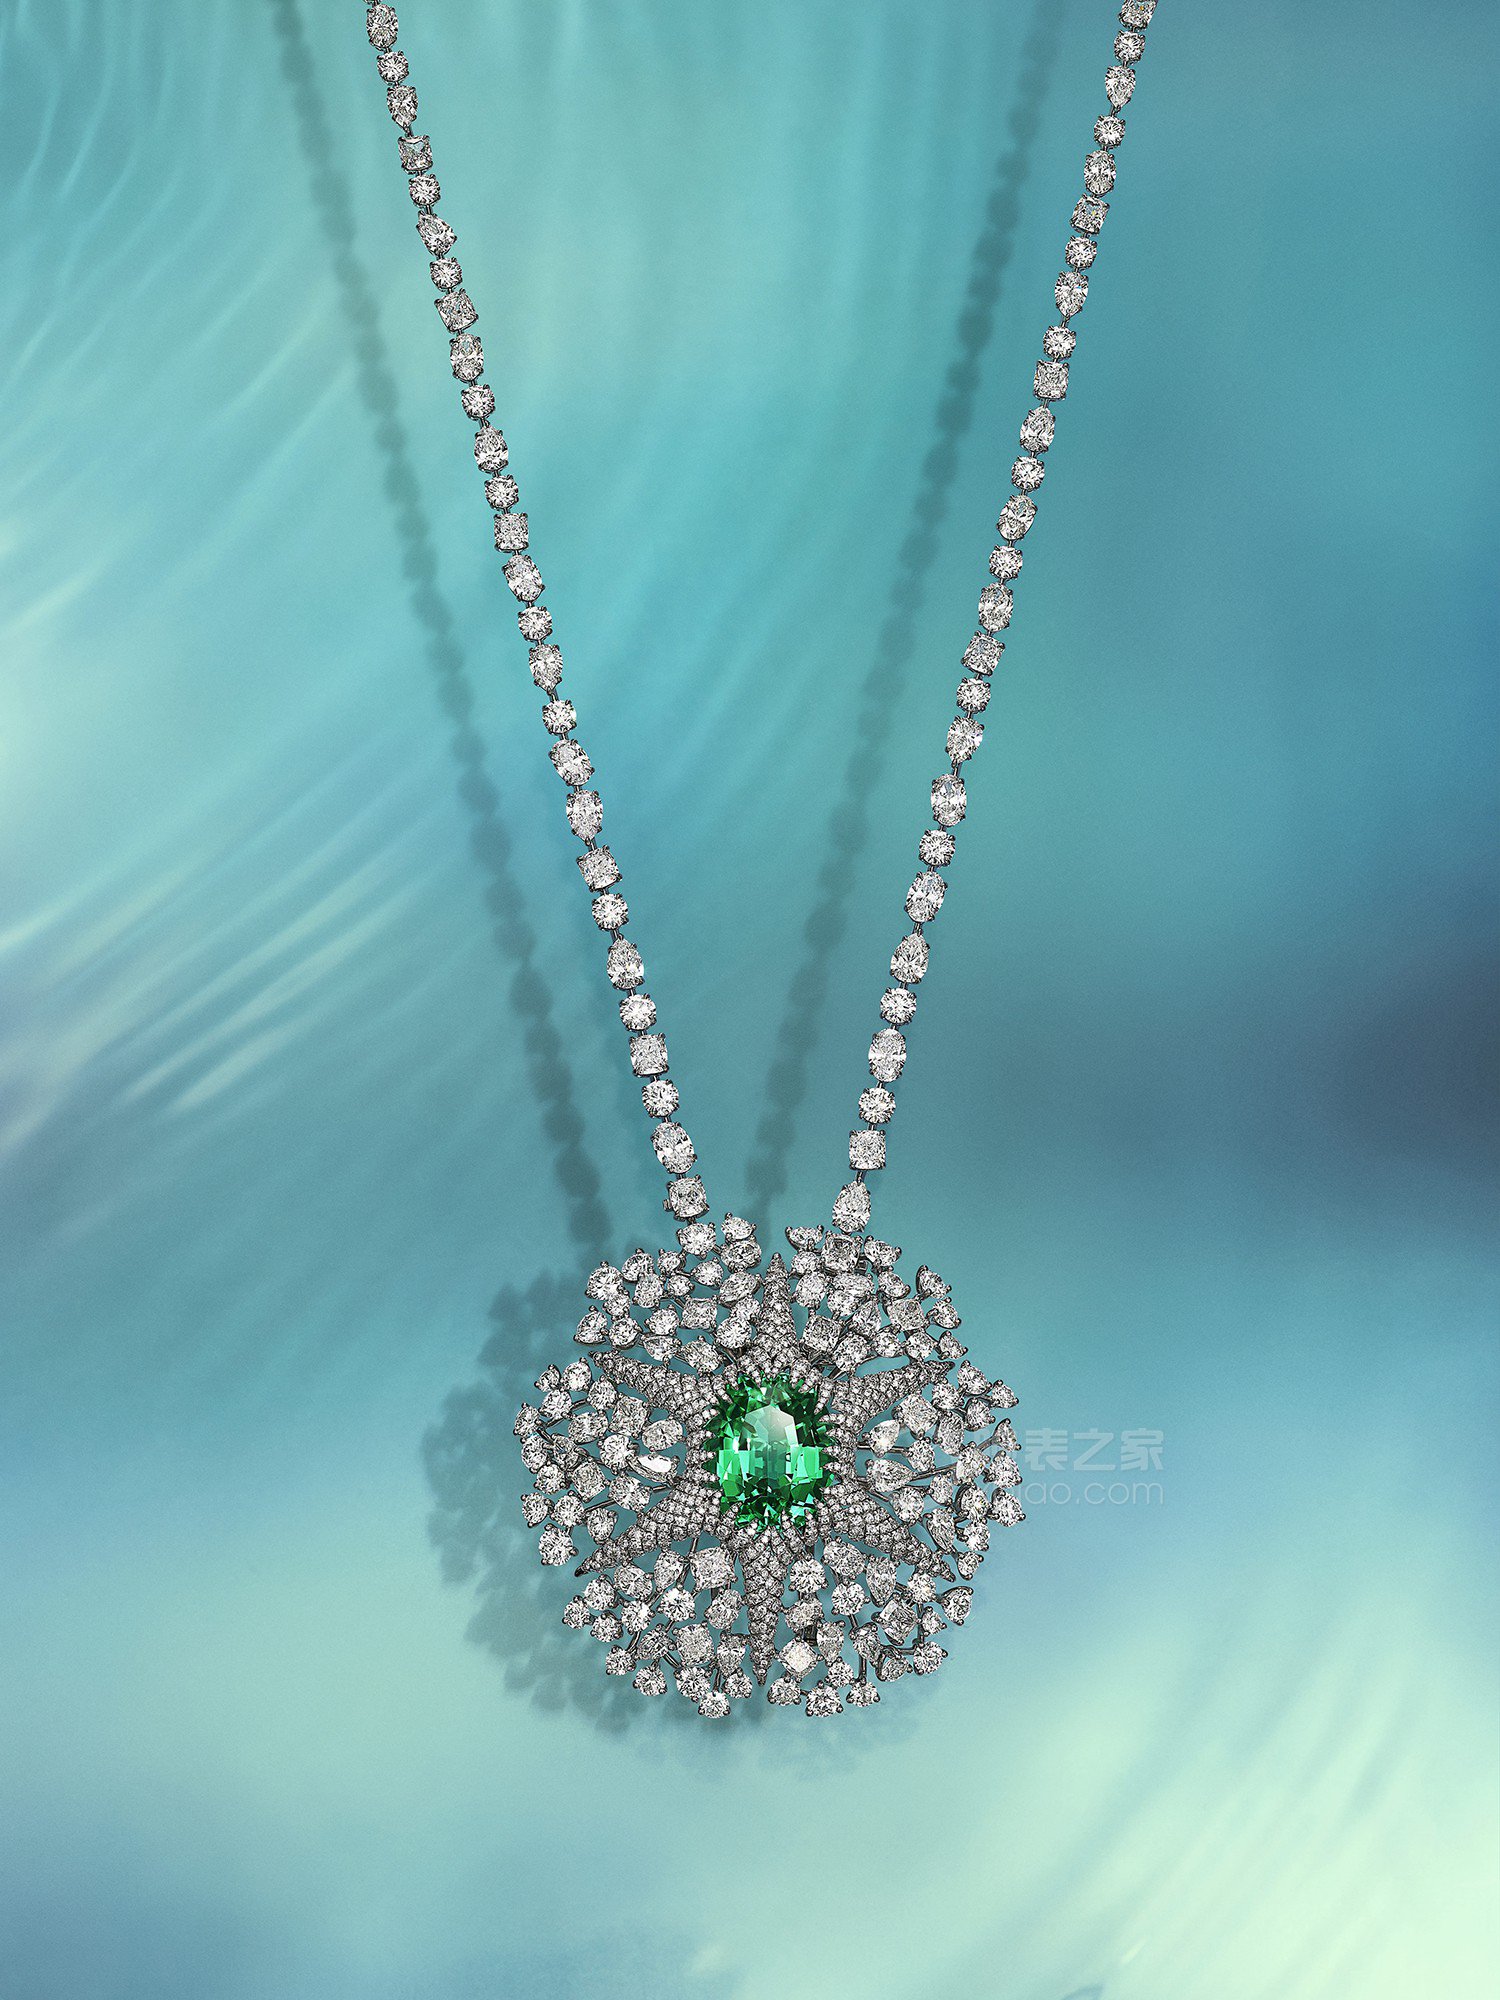 蒂芙尼BLUE BOOK高级珠宝铂金镶嵌一颗重逾22克拉未经优化处理的绿色铜锂碧玺及钻石项链项链